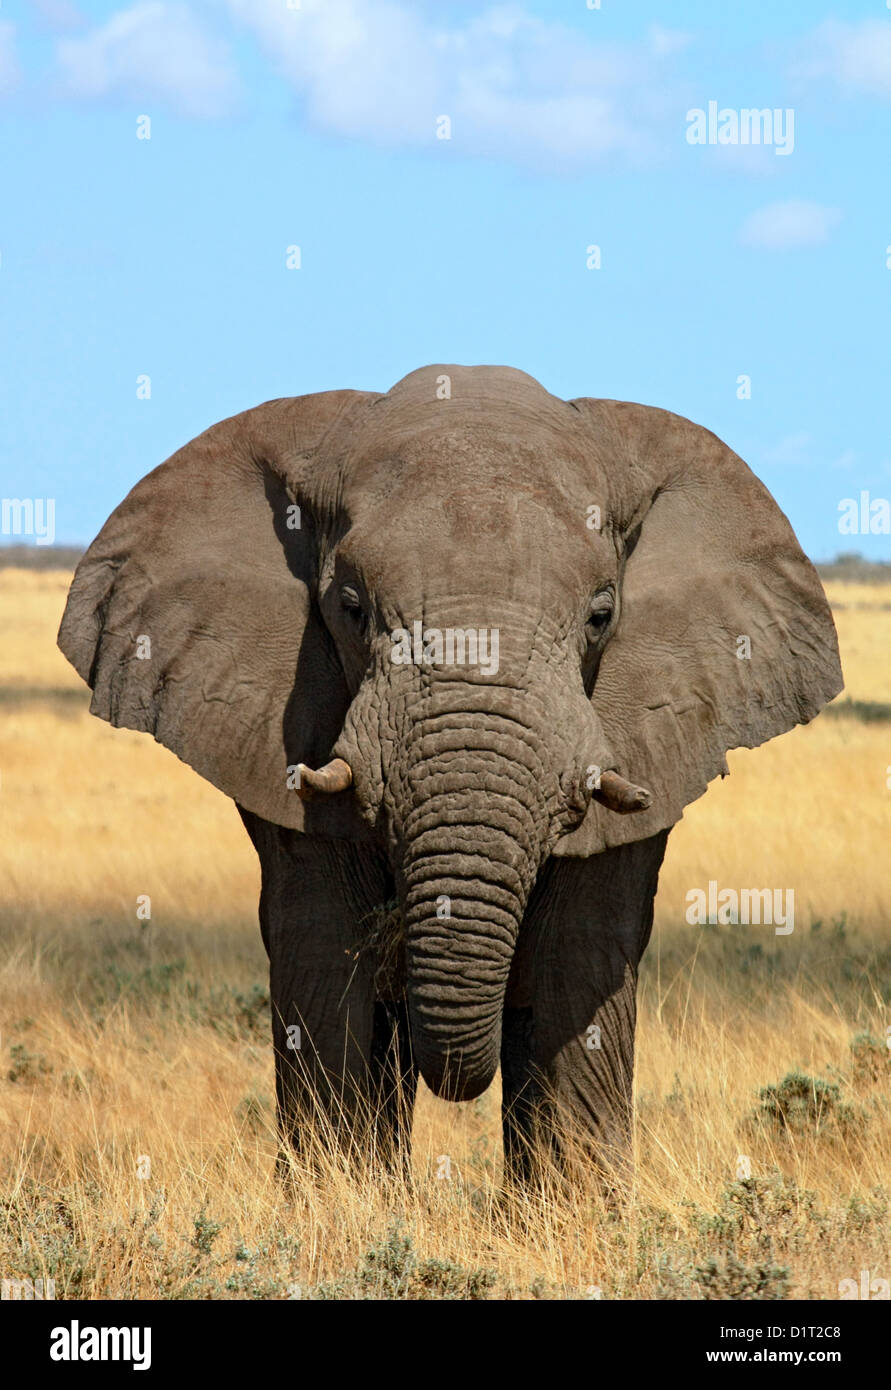 A large Bull Elephant in Etosha National Park, Namibia Stock Photo